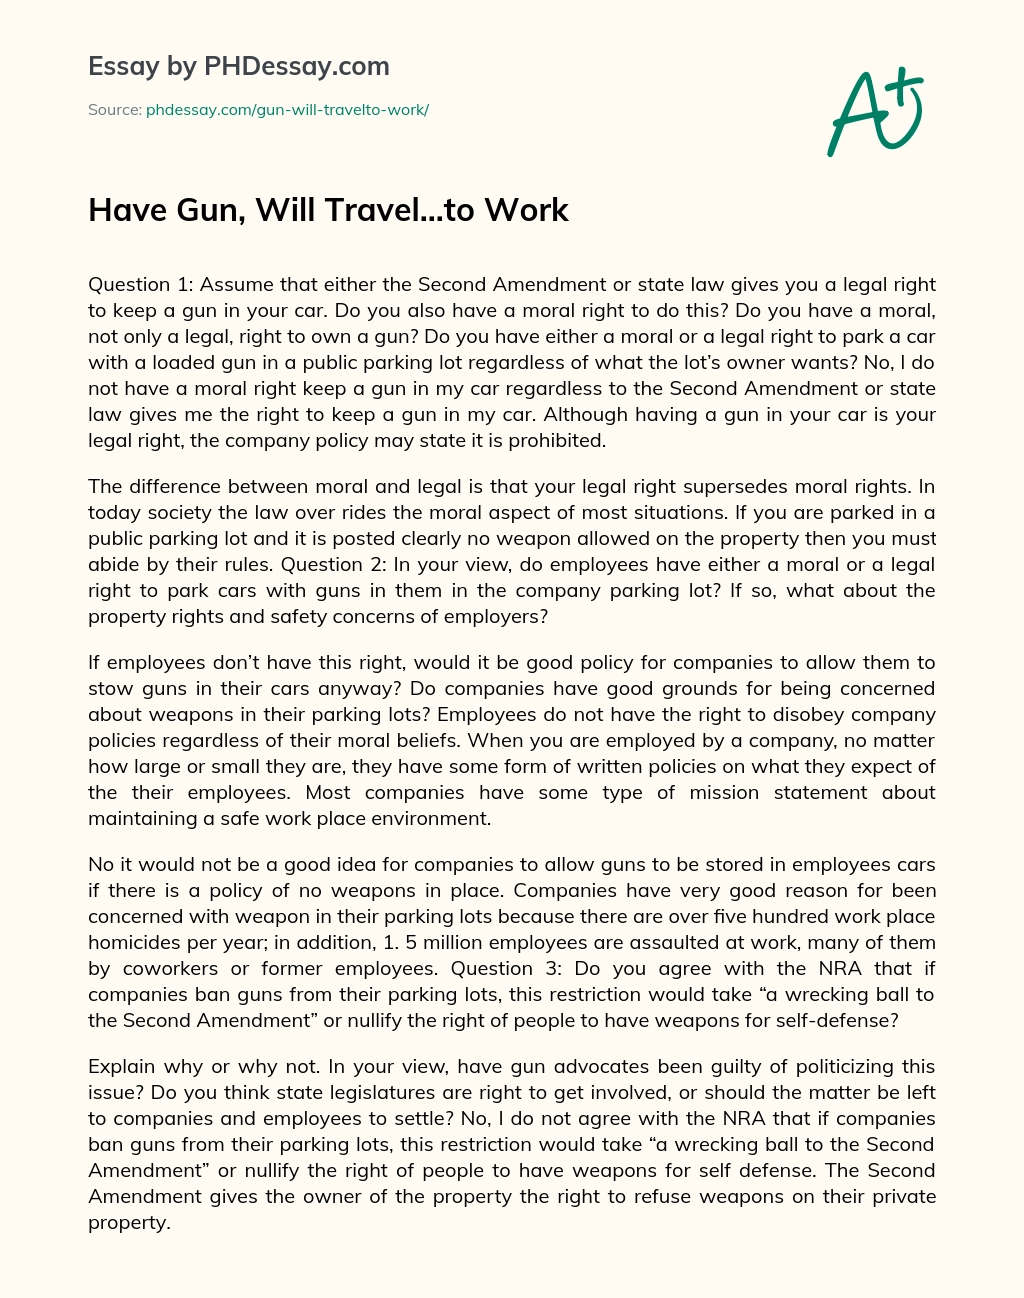 Have Gun, Will Travel…to Work essay